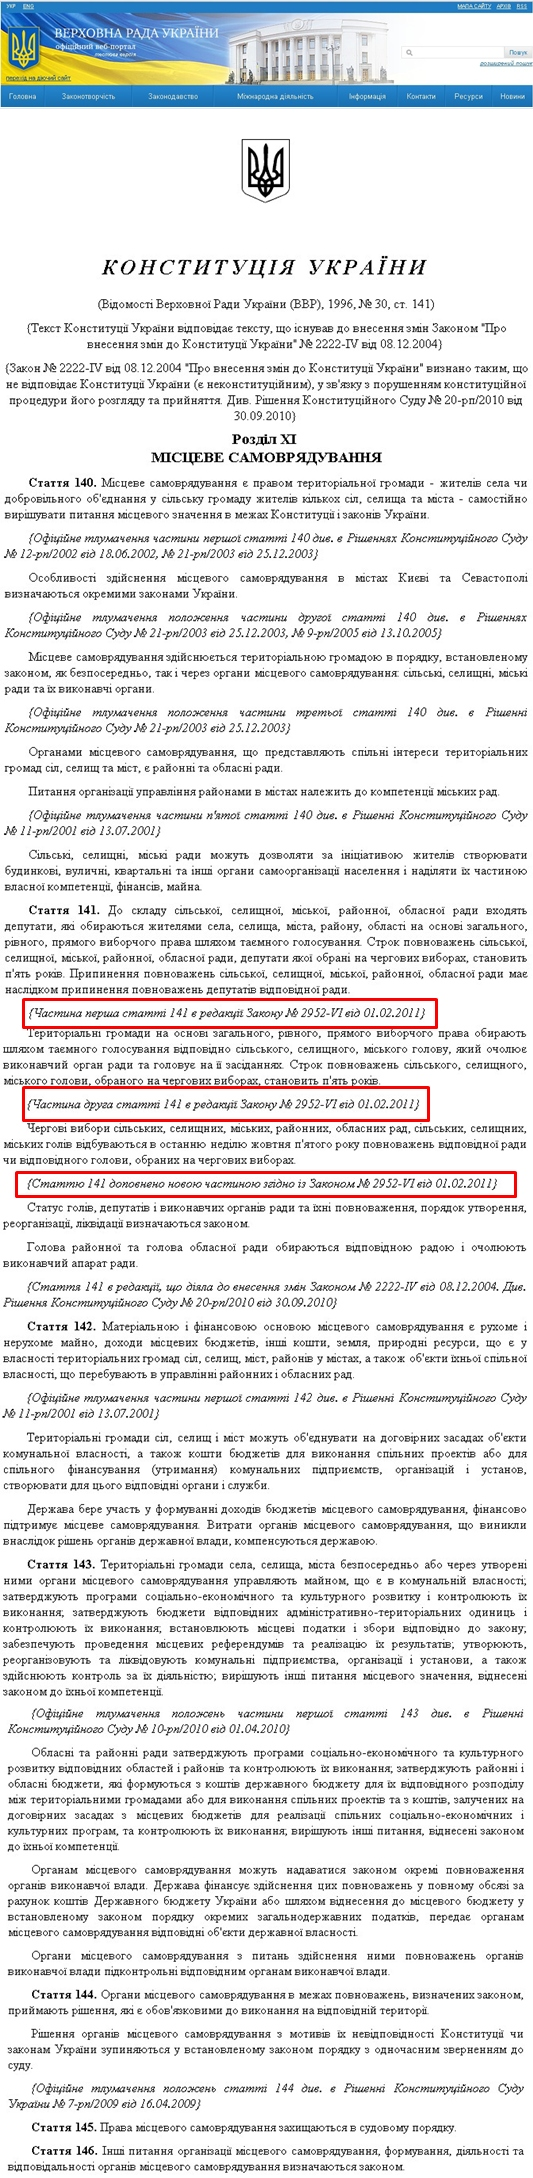 http://zakon1.rada.gov.ua/laws/show/254%D0%BA/96-%D0%B2%D1%80/print1348338616098838